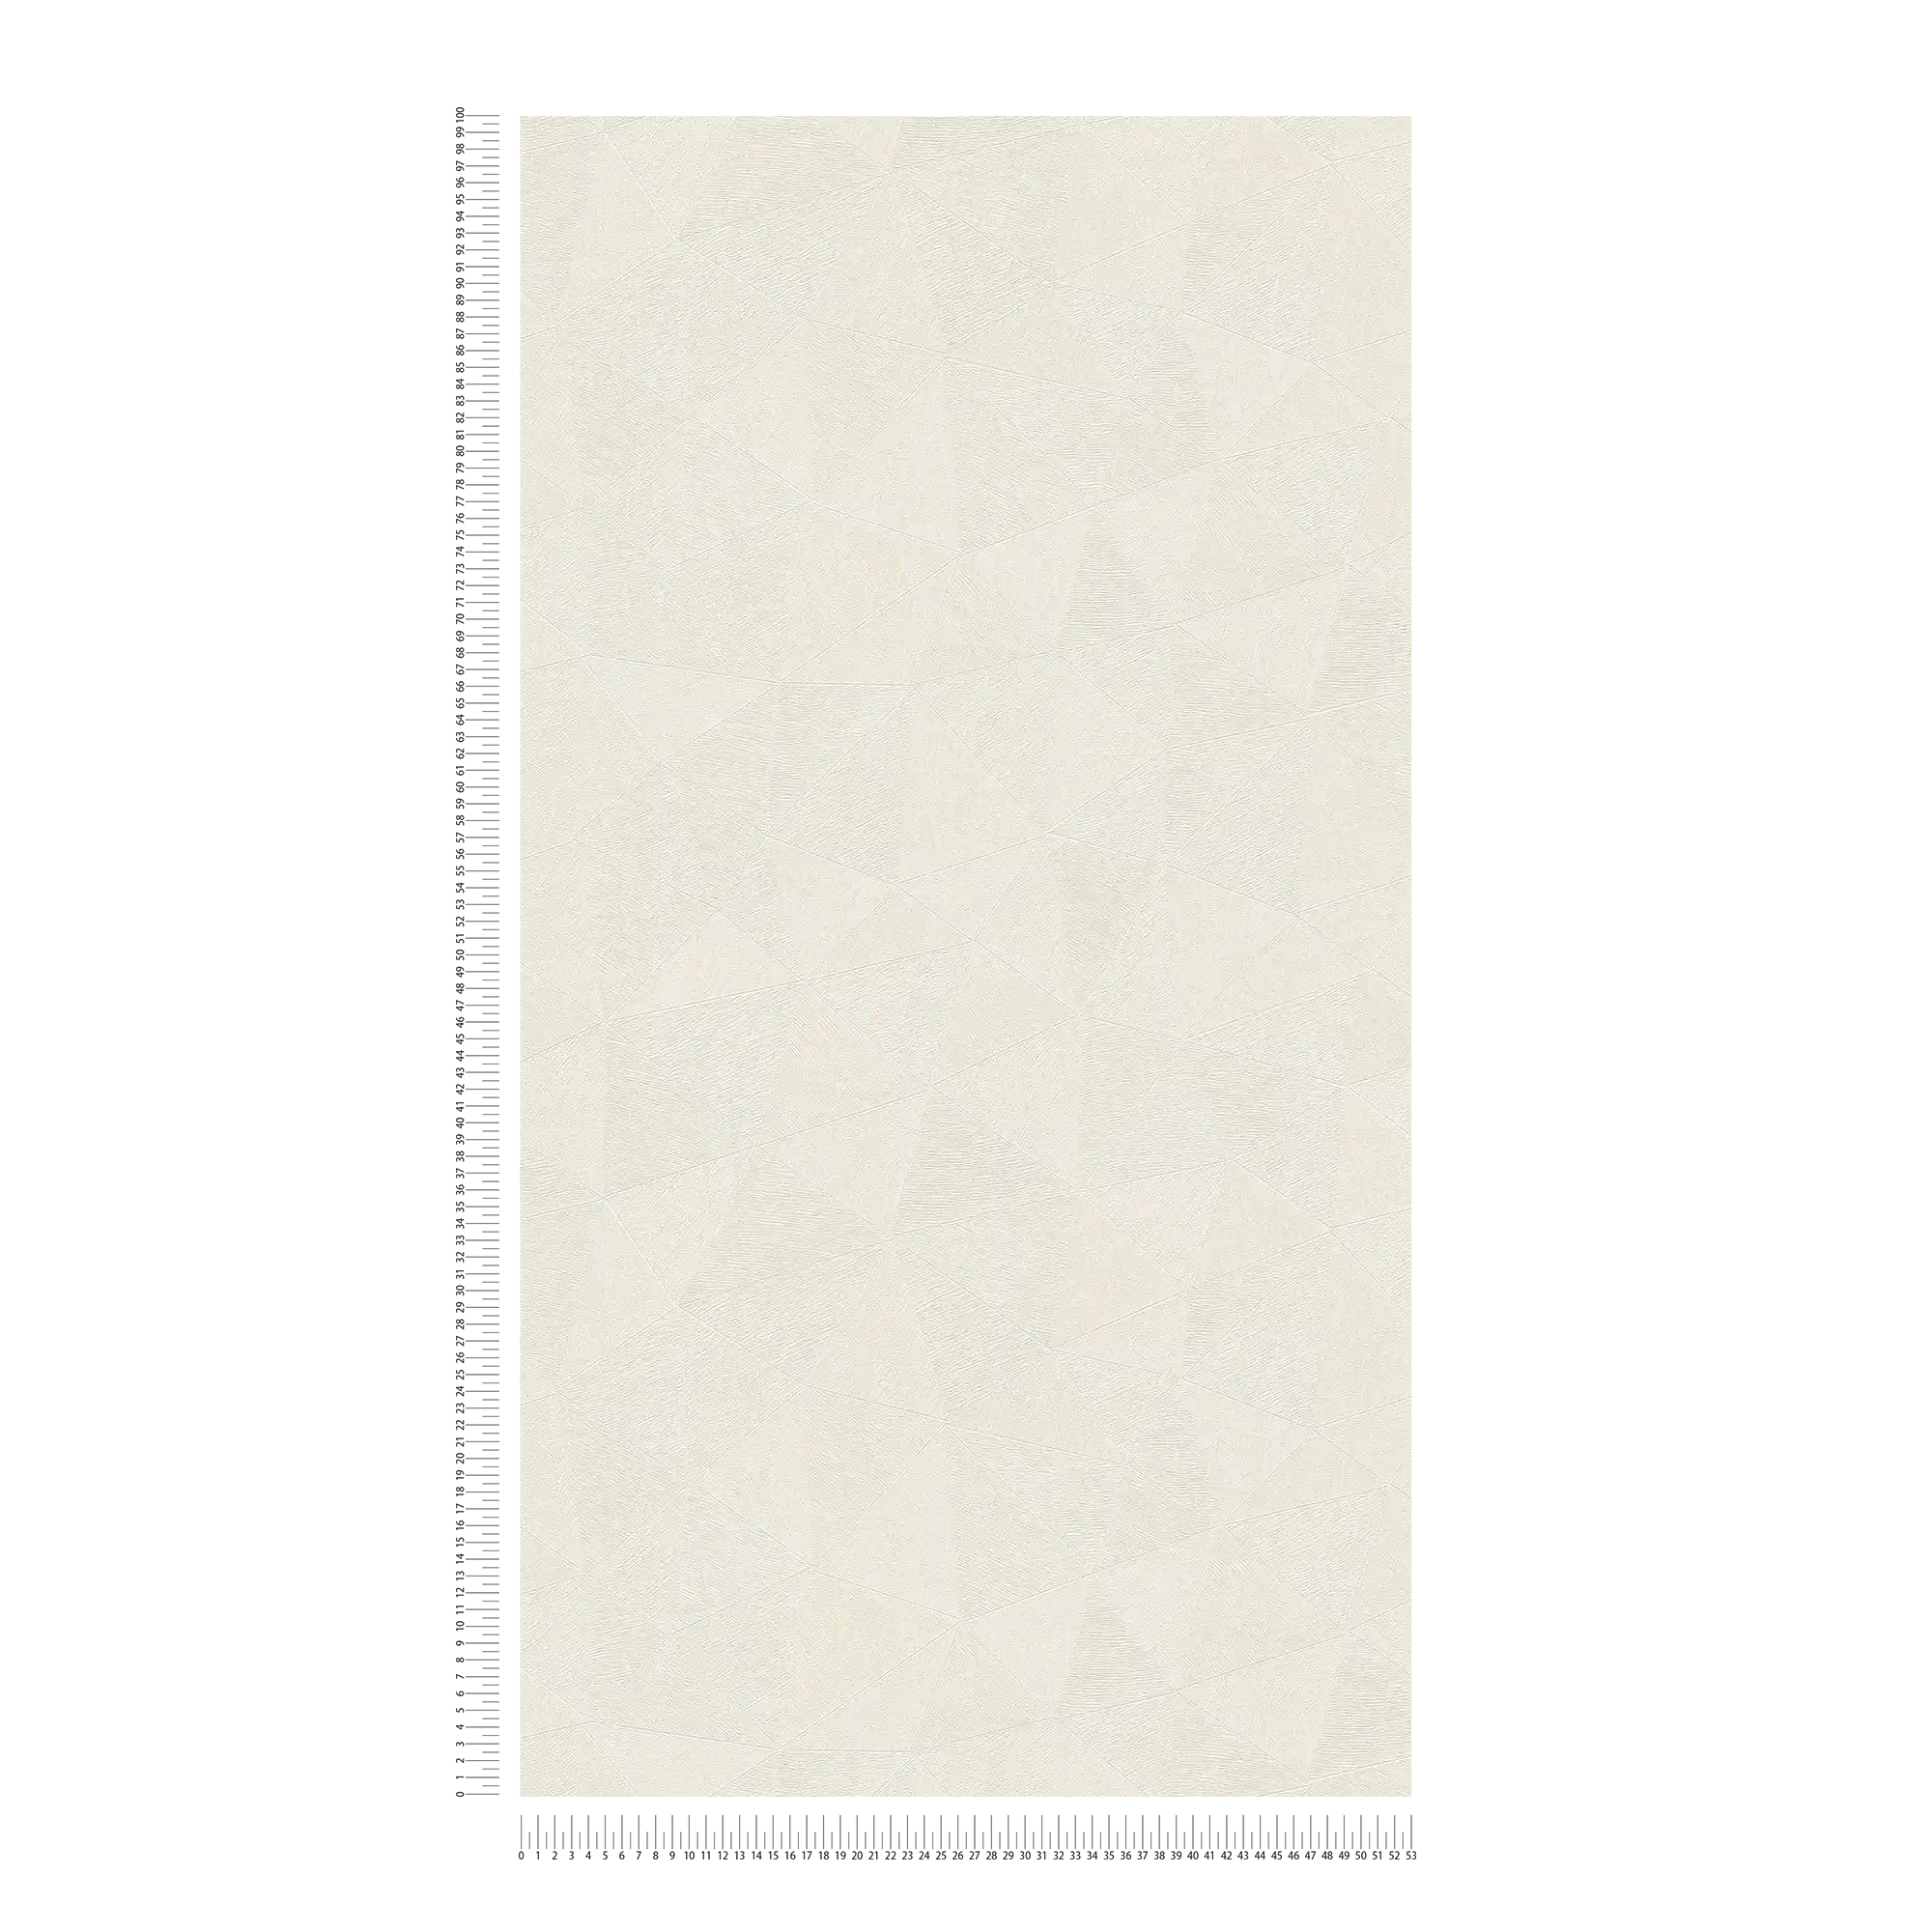             Carta da parati grafica in tessuto non tessuto con motivi luminosi - bianco
        